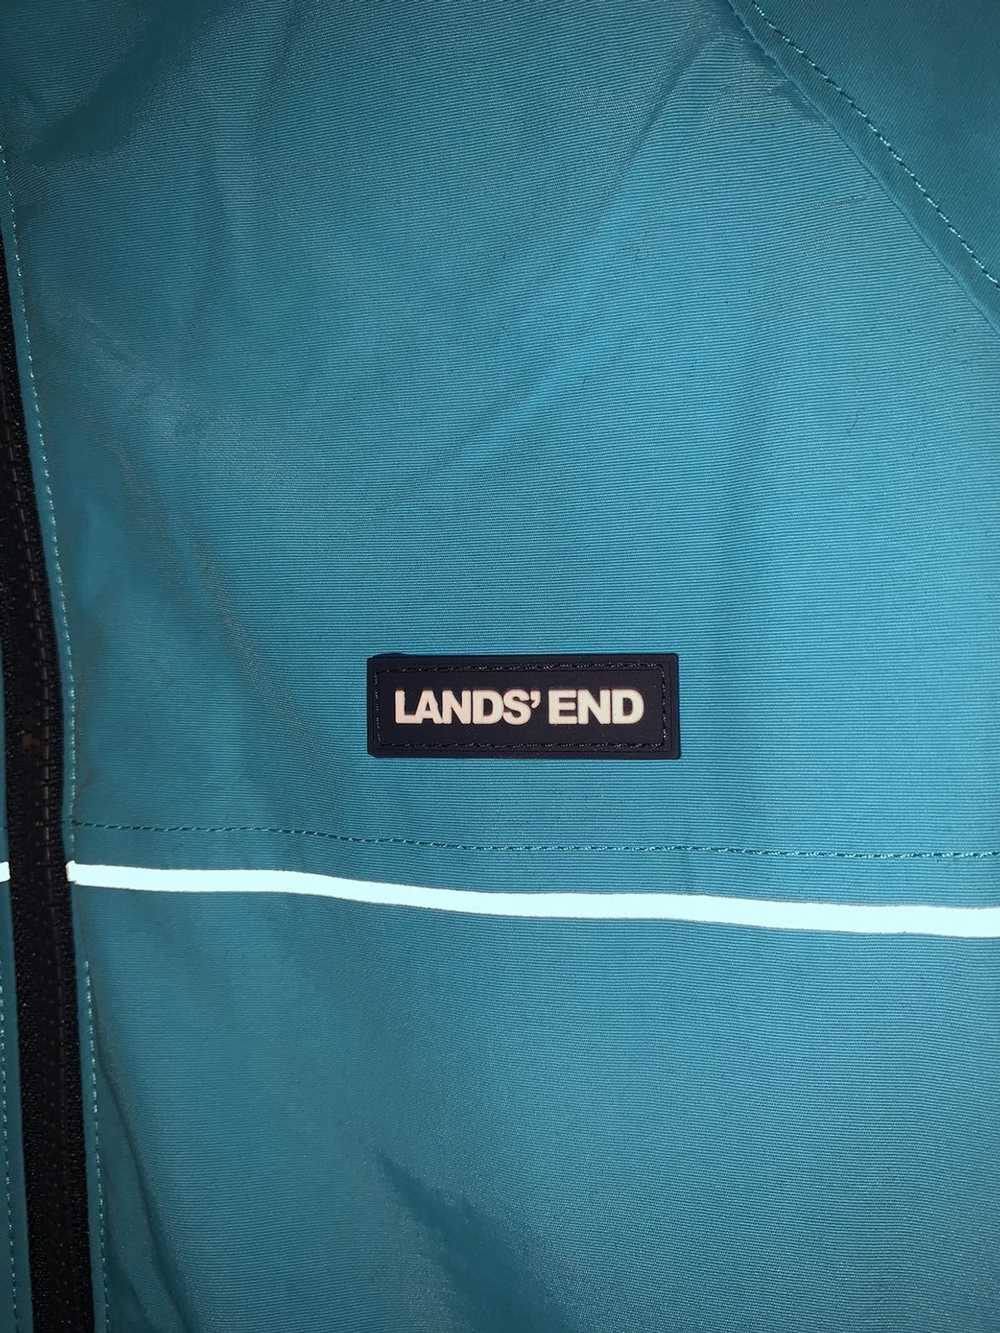 Lands End LANDS’ END Classic jacket - image 3